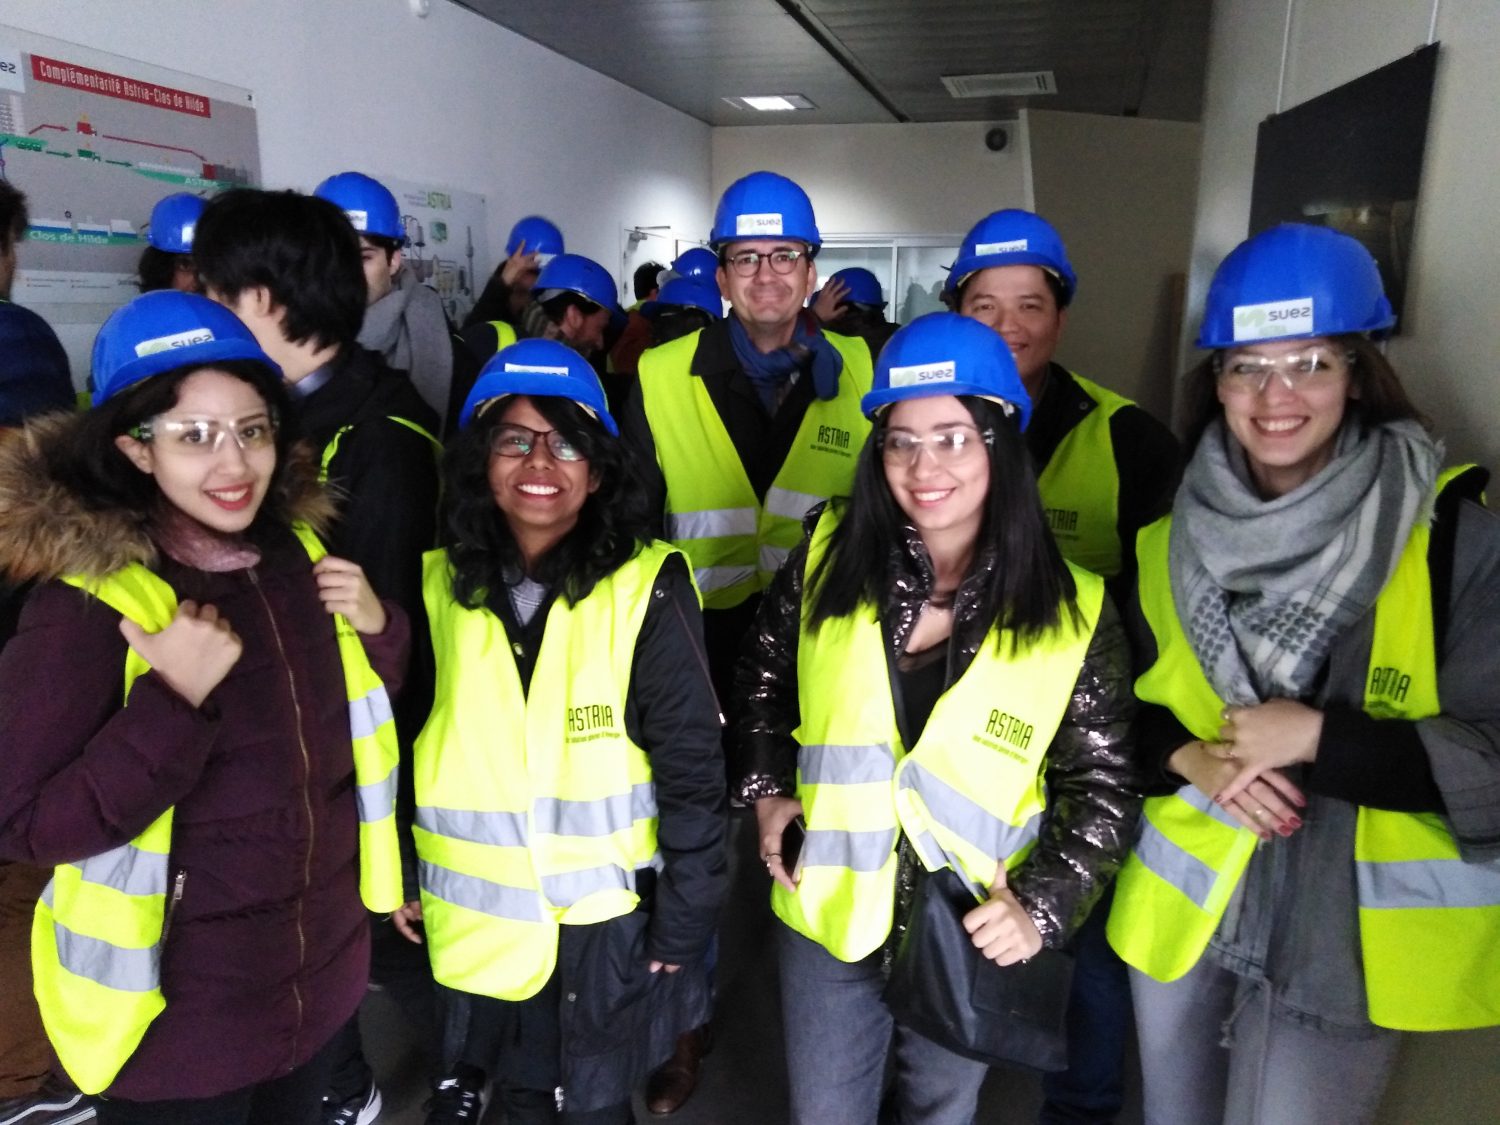 Les doctorants du projet européen INSPIRE coordonné par l'Université Paris Diderot sont en tenue de protection afin de visiter l'usine de traitement et de valorisation des déchets.